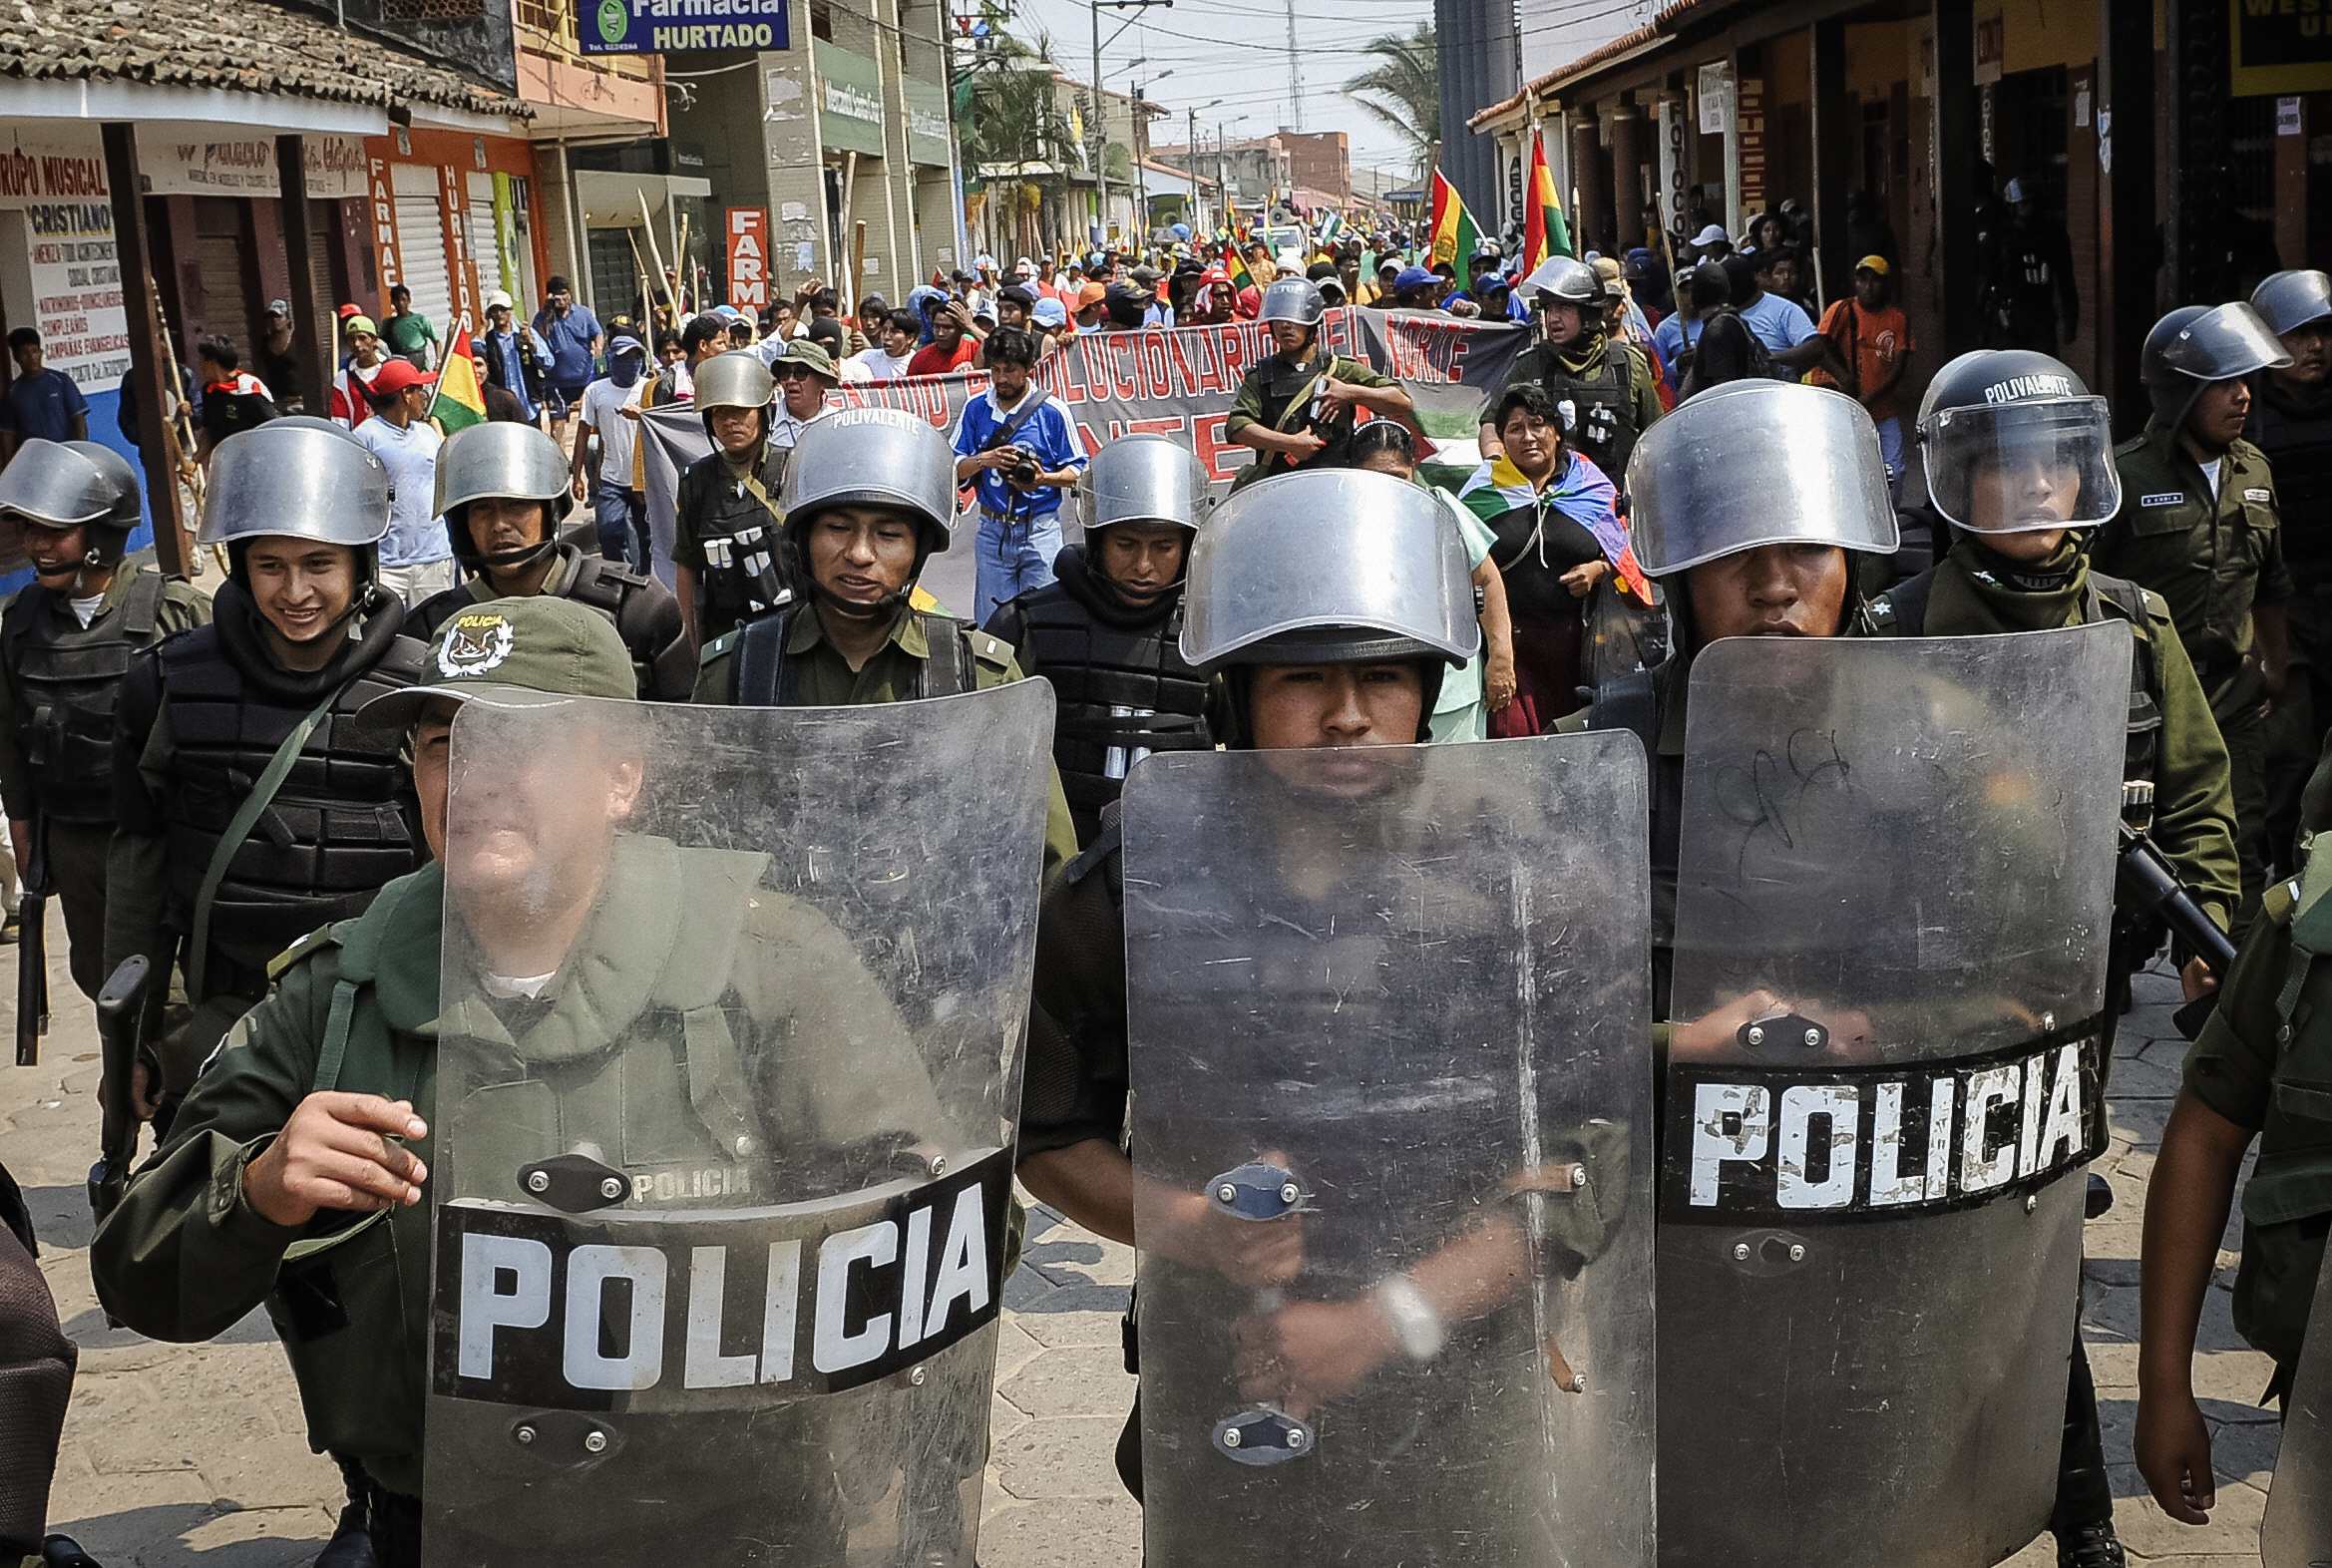 Cảnh sát chống bạo động hộ tống một nhóm người ủng hộ đảng Phong trào Tiến Lên Chủ Nghĩa Xã hội (MAS) của Tổng thống Bolivia Evo Morales, khi họ tiến vào thành phố Montero, phía bắc Santa Cruz, Bolivia, vào ngày 24/09/2008. (Ảnh: Aizer Raldes/AFP qua Getty Images)